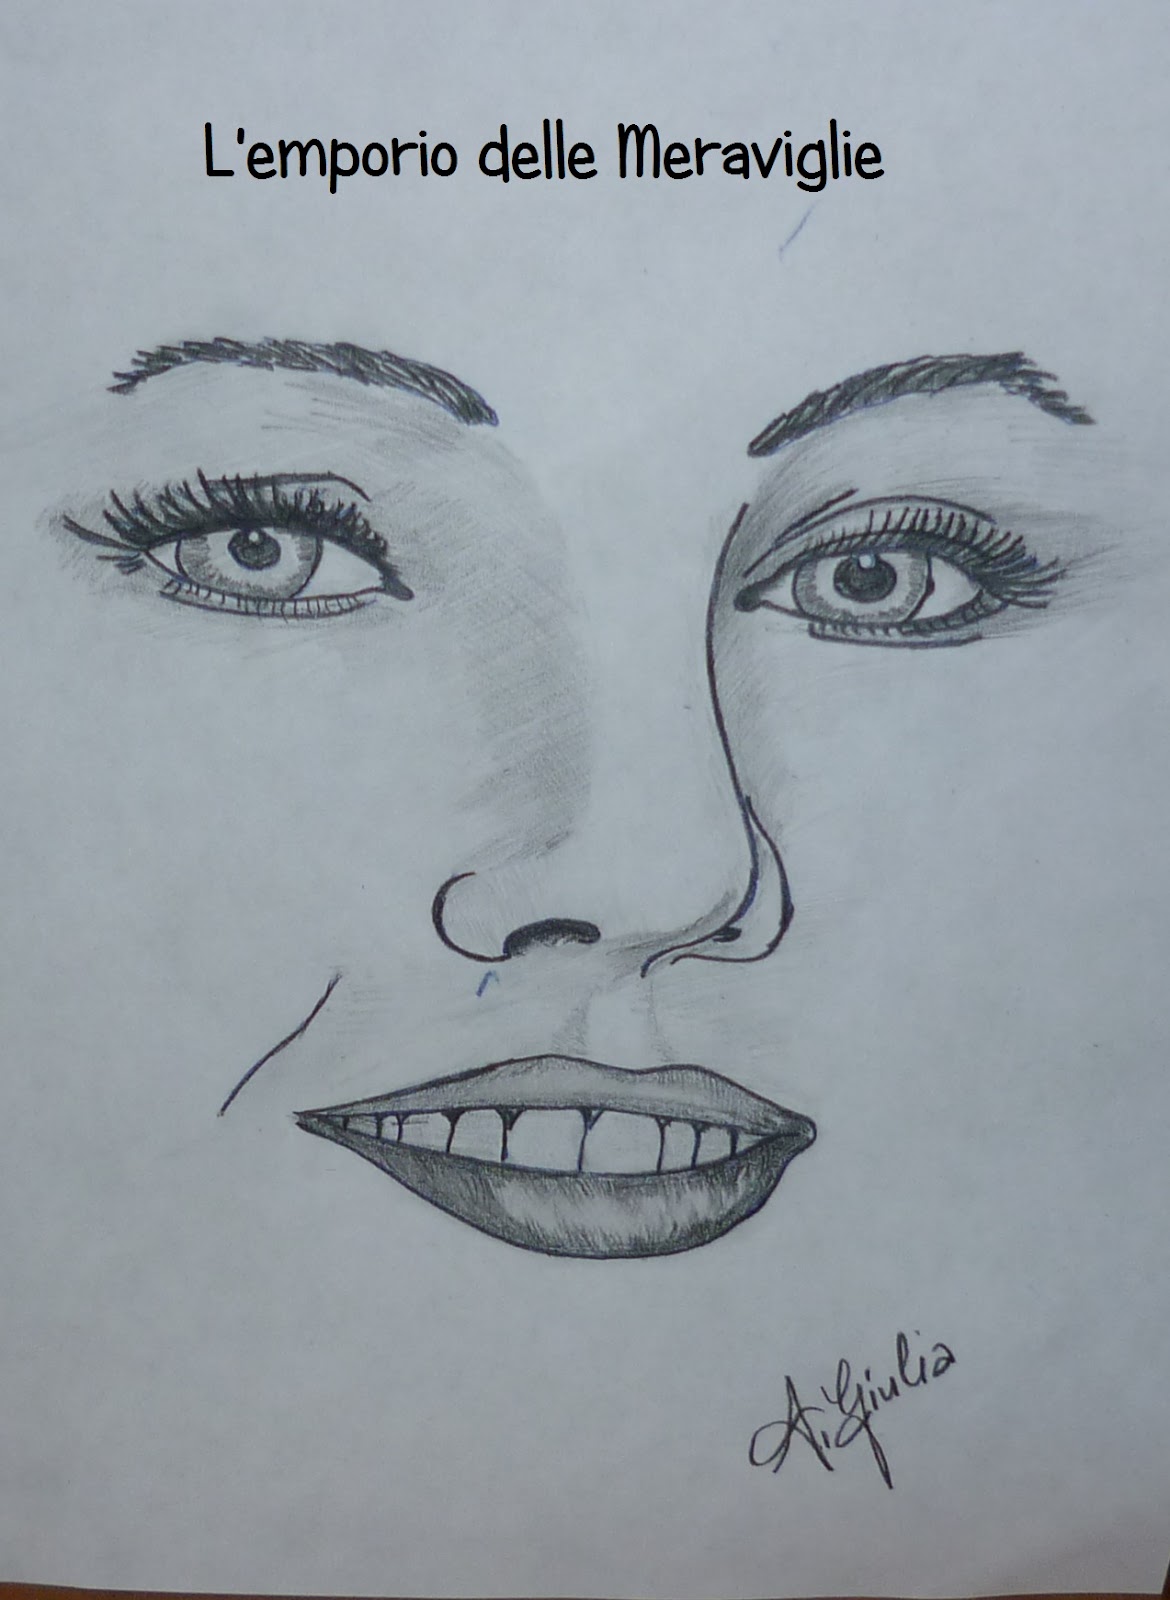 Imparare a disegnare un volto significa costruire muniti soltanto di un foglio di carta e una matita quindi in una dinamica bi dimensionale qualcosa che